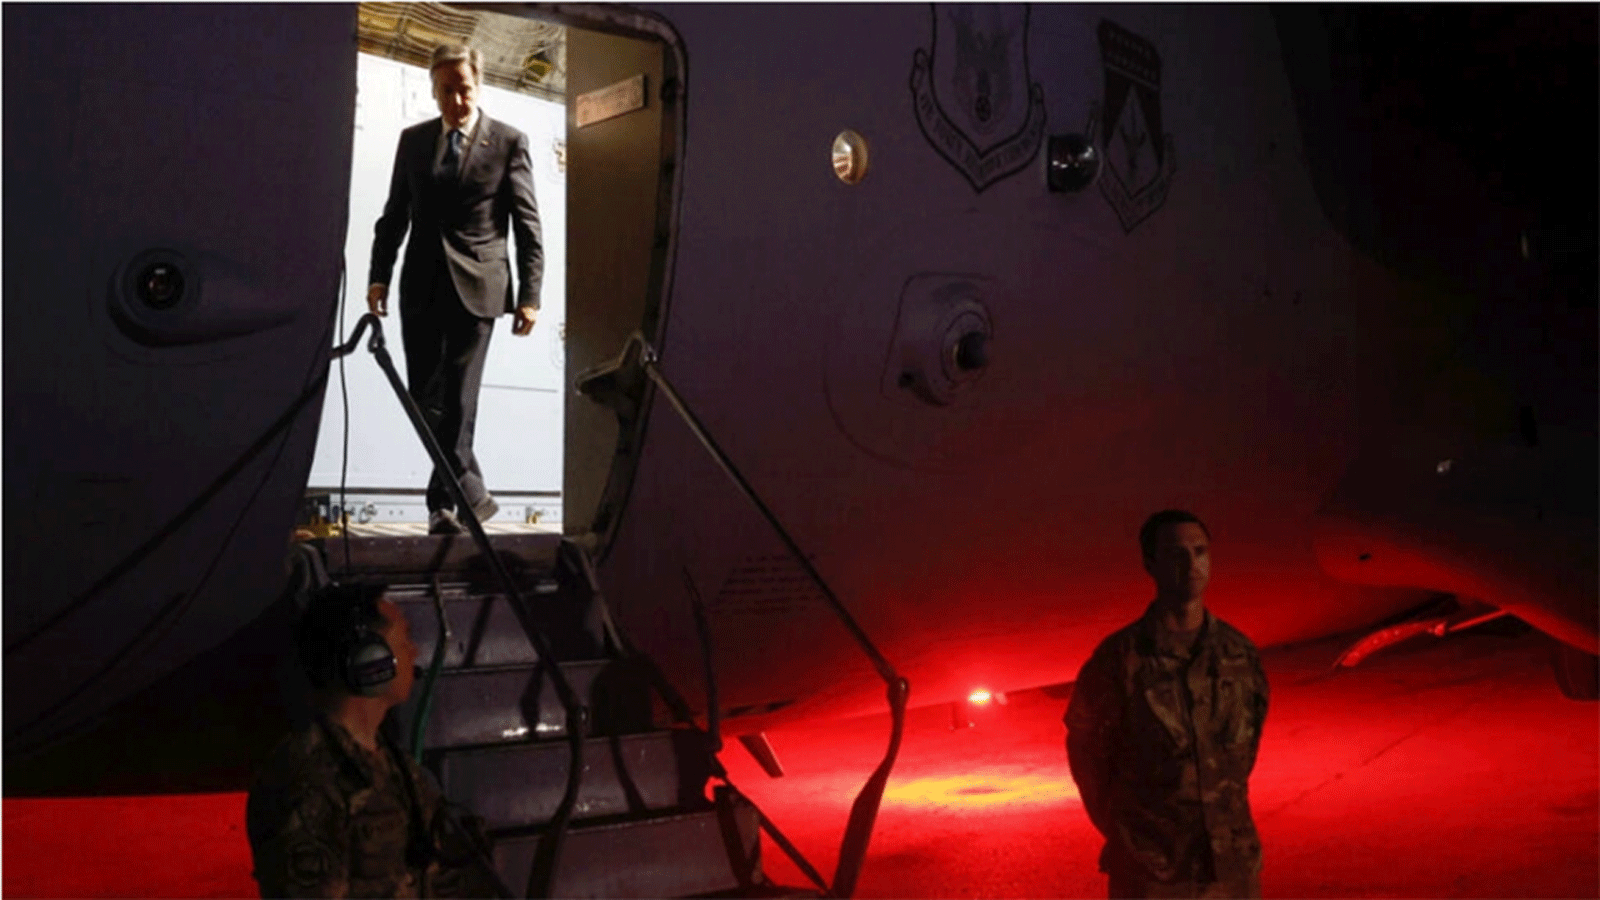 وزير الخارجية الأميركي أنتوني بلينكن يصل إلى الأردن مساء الجمعة بعد أن غادر إسرائيل خالي الوفاض في جهوده لتأمين 